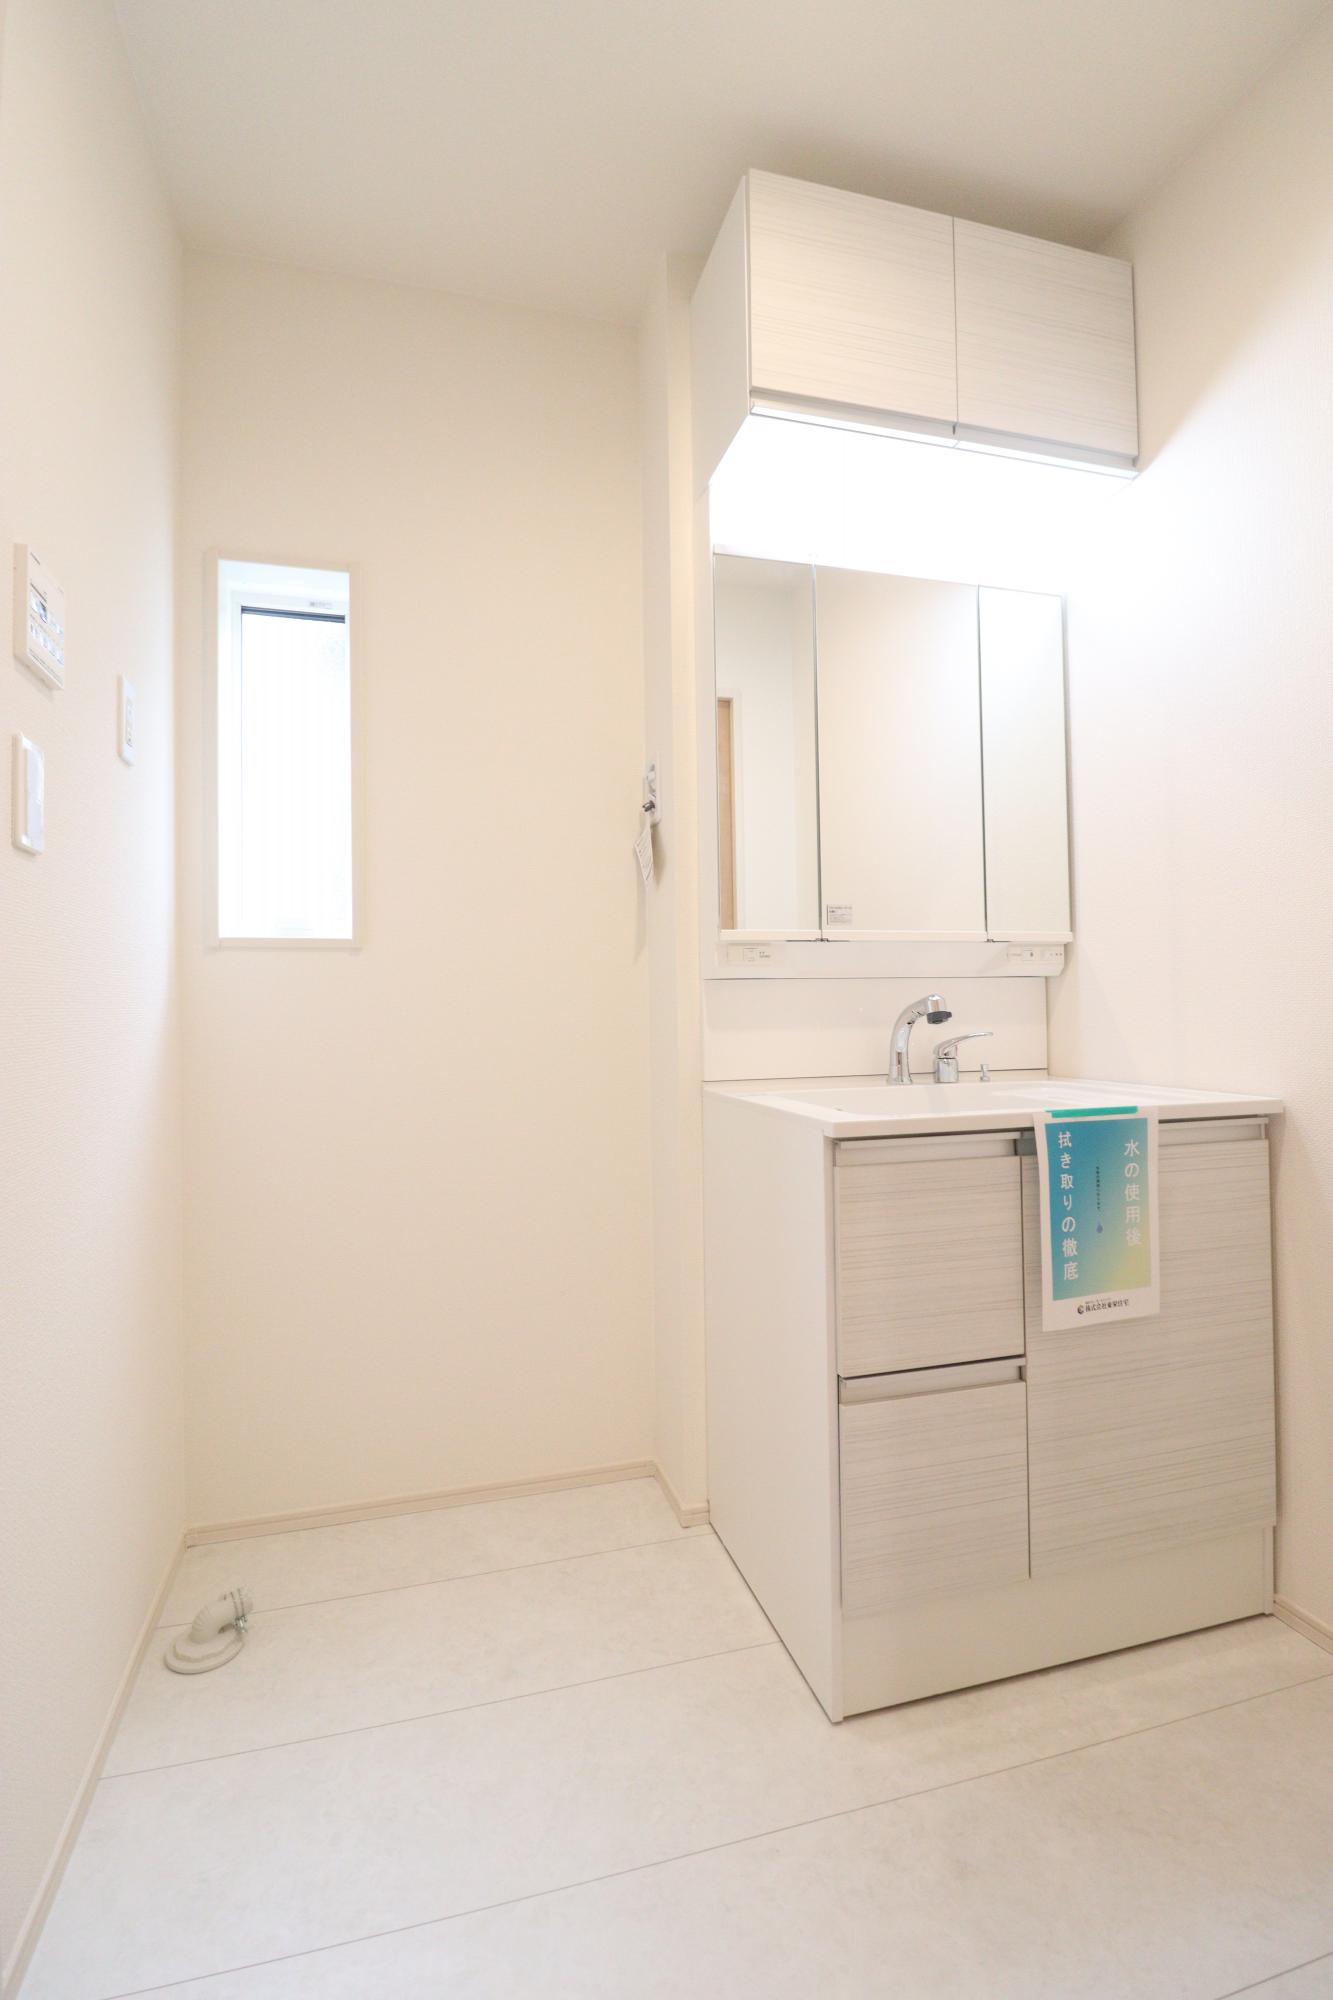 【弊社施工例】収納力と機能性に優れたシャワー付き洗面化粧台! 鏡の内側にも収納スペースがあるので、細かいものも整理しやすいです。　